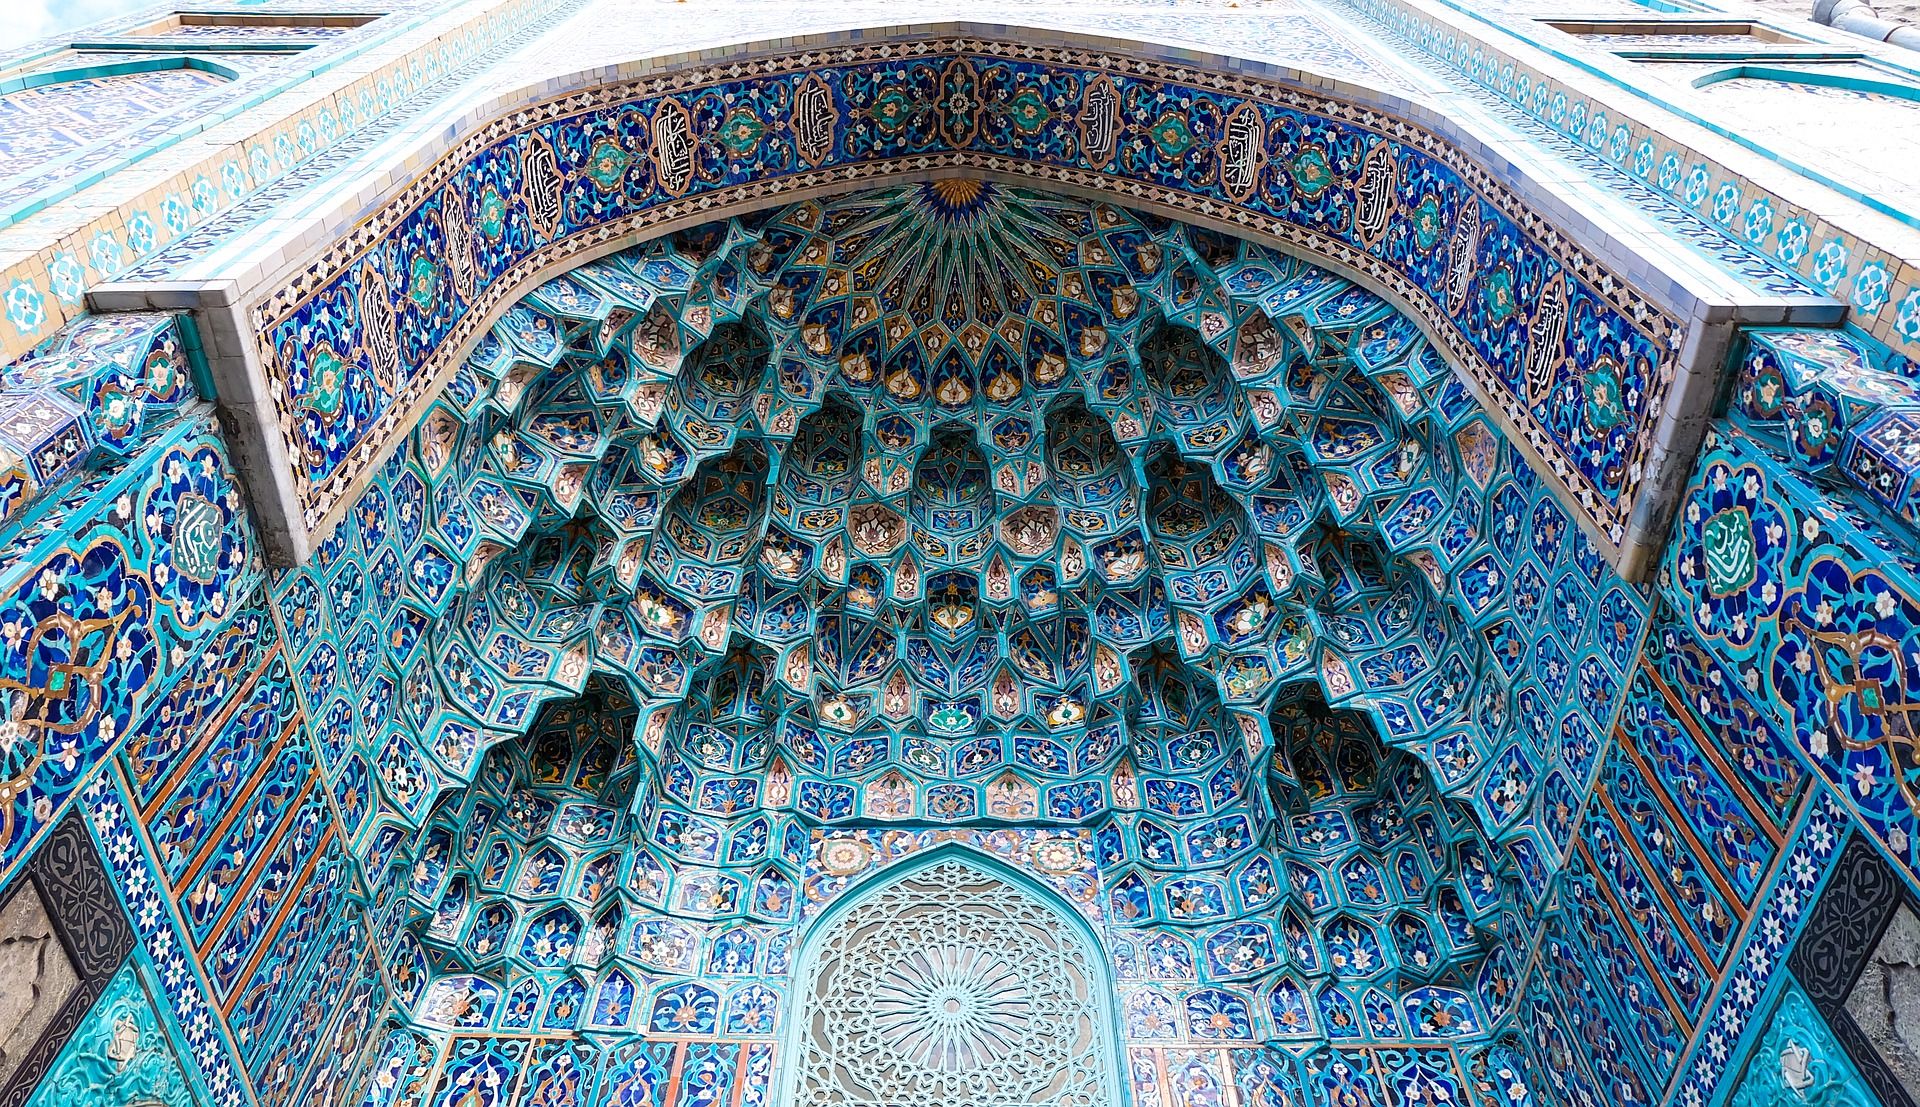 St Petersburg Mosque - modlar.com